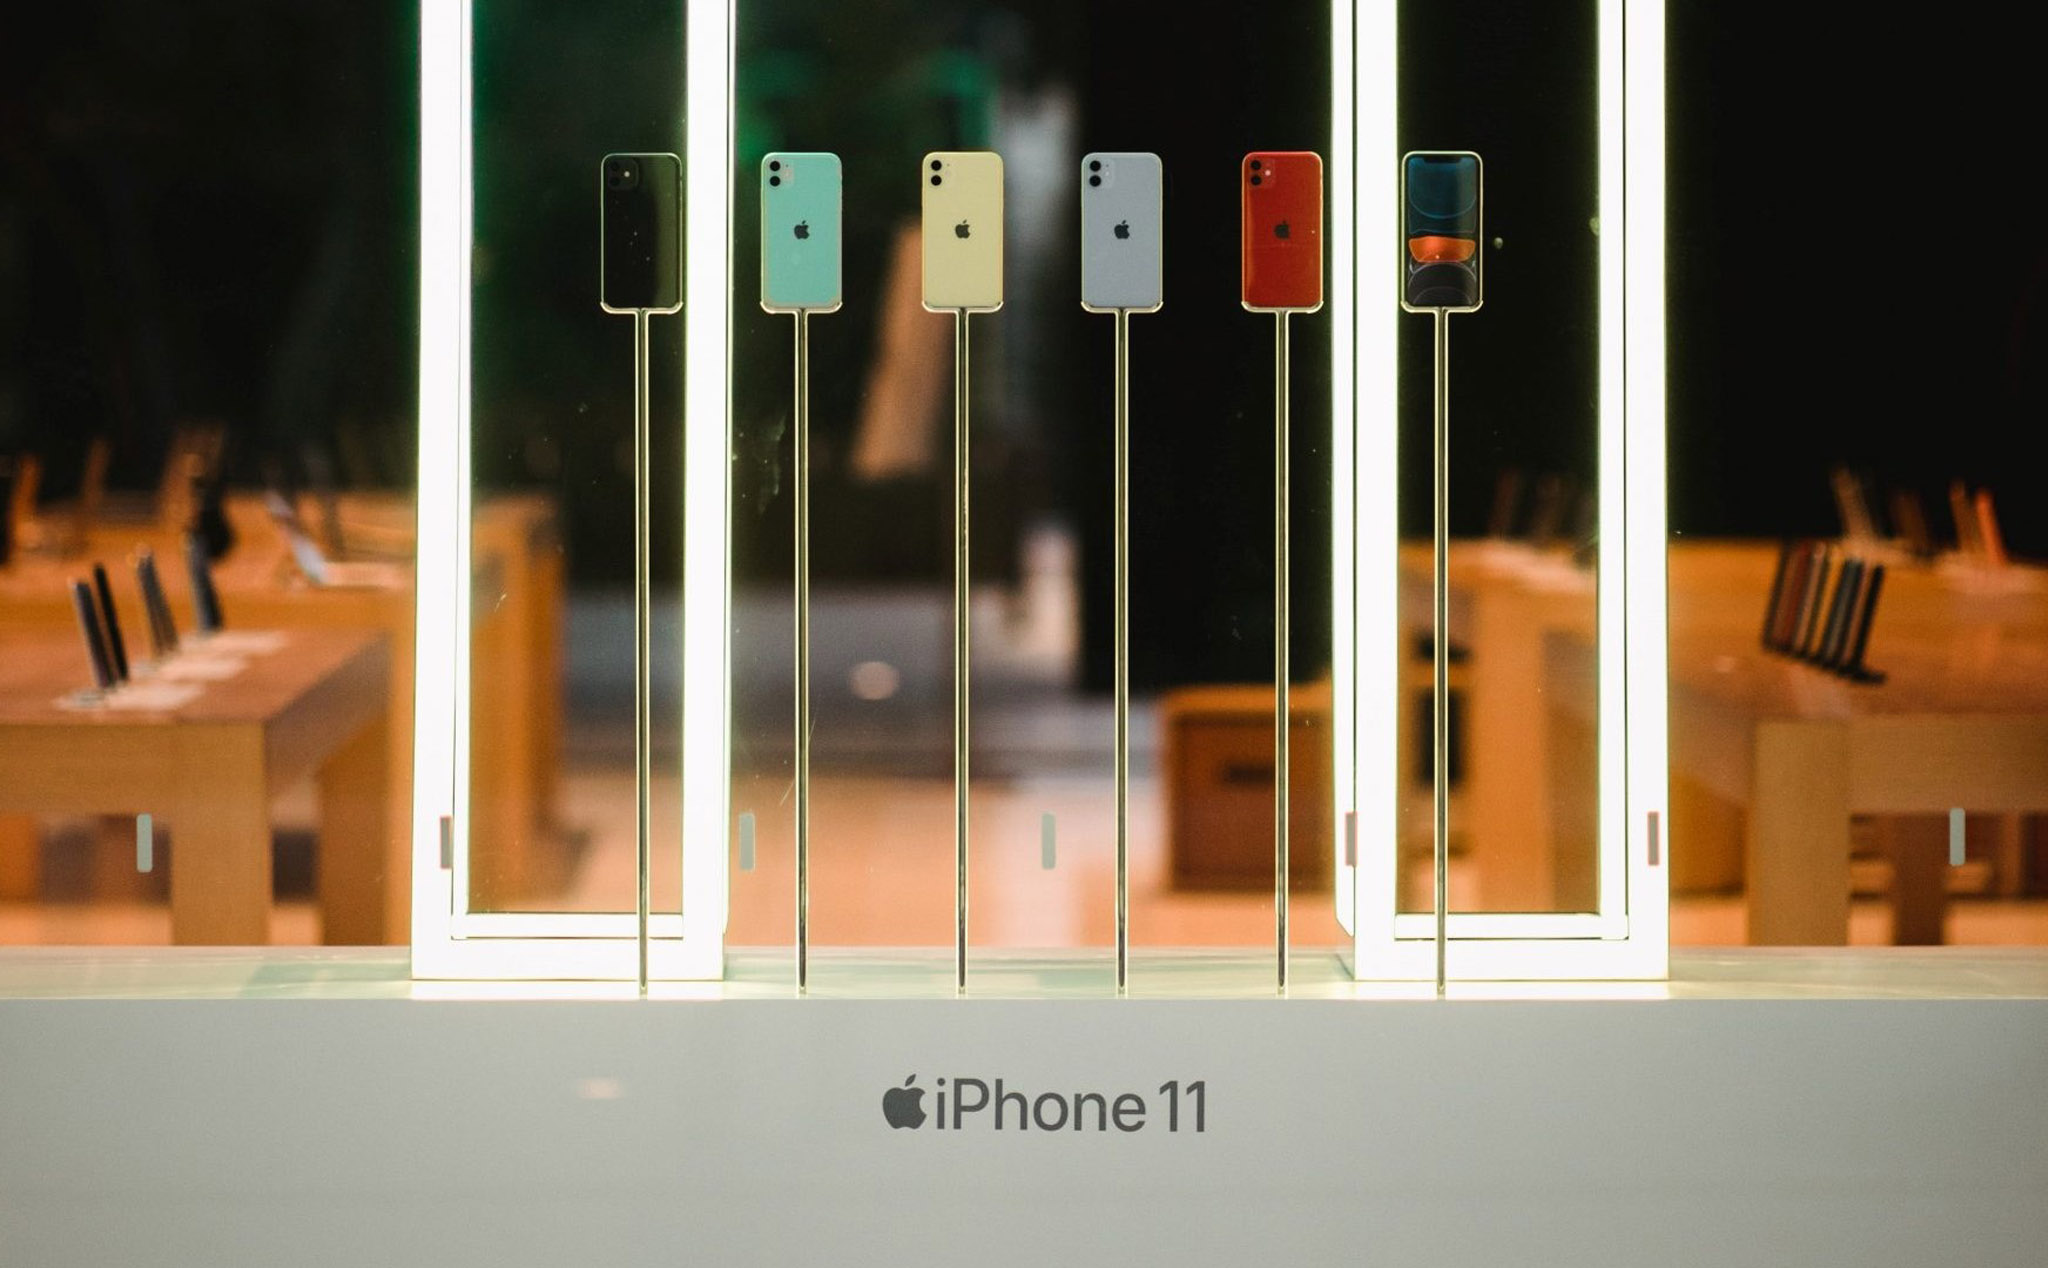 Nhà bán lẻ Trung Quốc phải giảm giá sâu iPhone 11 để kích cầu